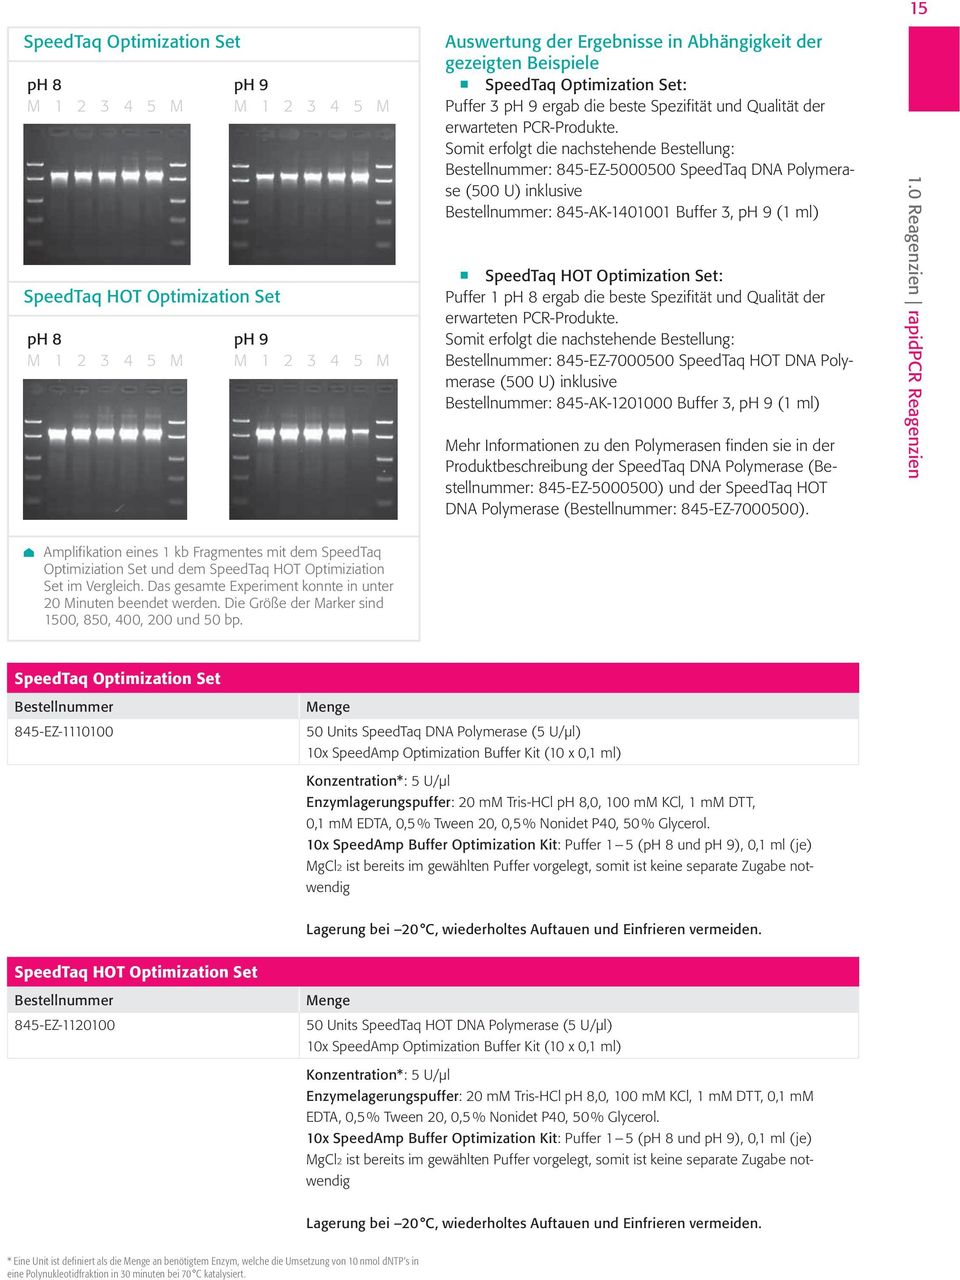 Somit erfolgt die nachstehende Bestellung: : 845-EZ-5000500 SpeedTaq DNA Polymerase (500 U) inklusive : 845-AK-1401001 Buffer 3, ph 9 (1 ml) SpeedTaq HOT Optimization Set: Puffer 1 ph 8 ergab die